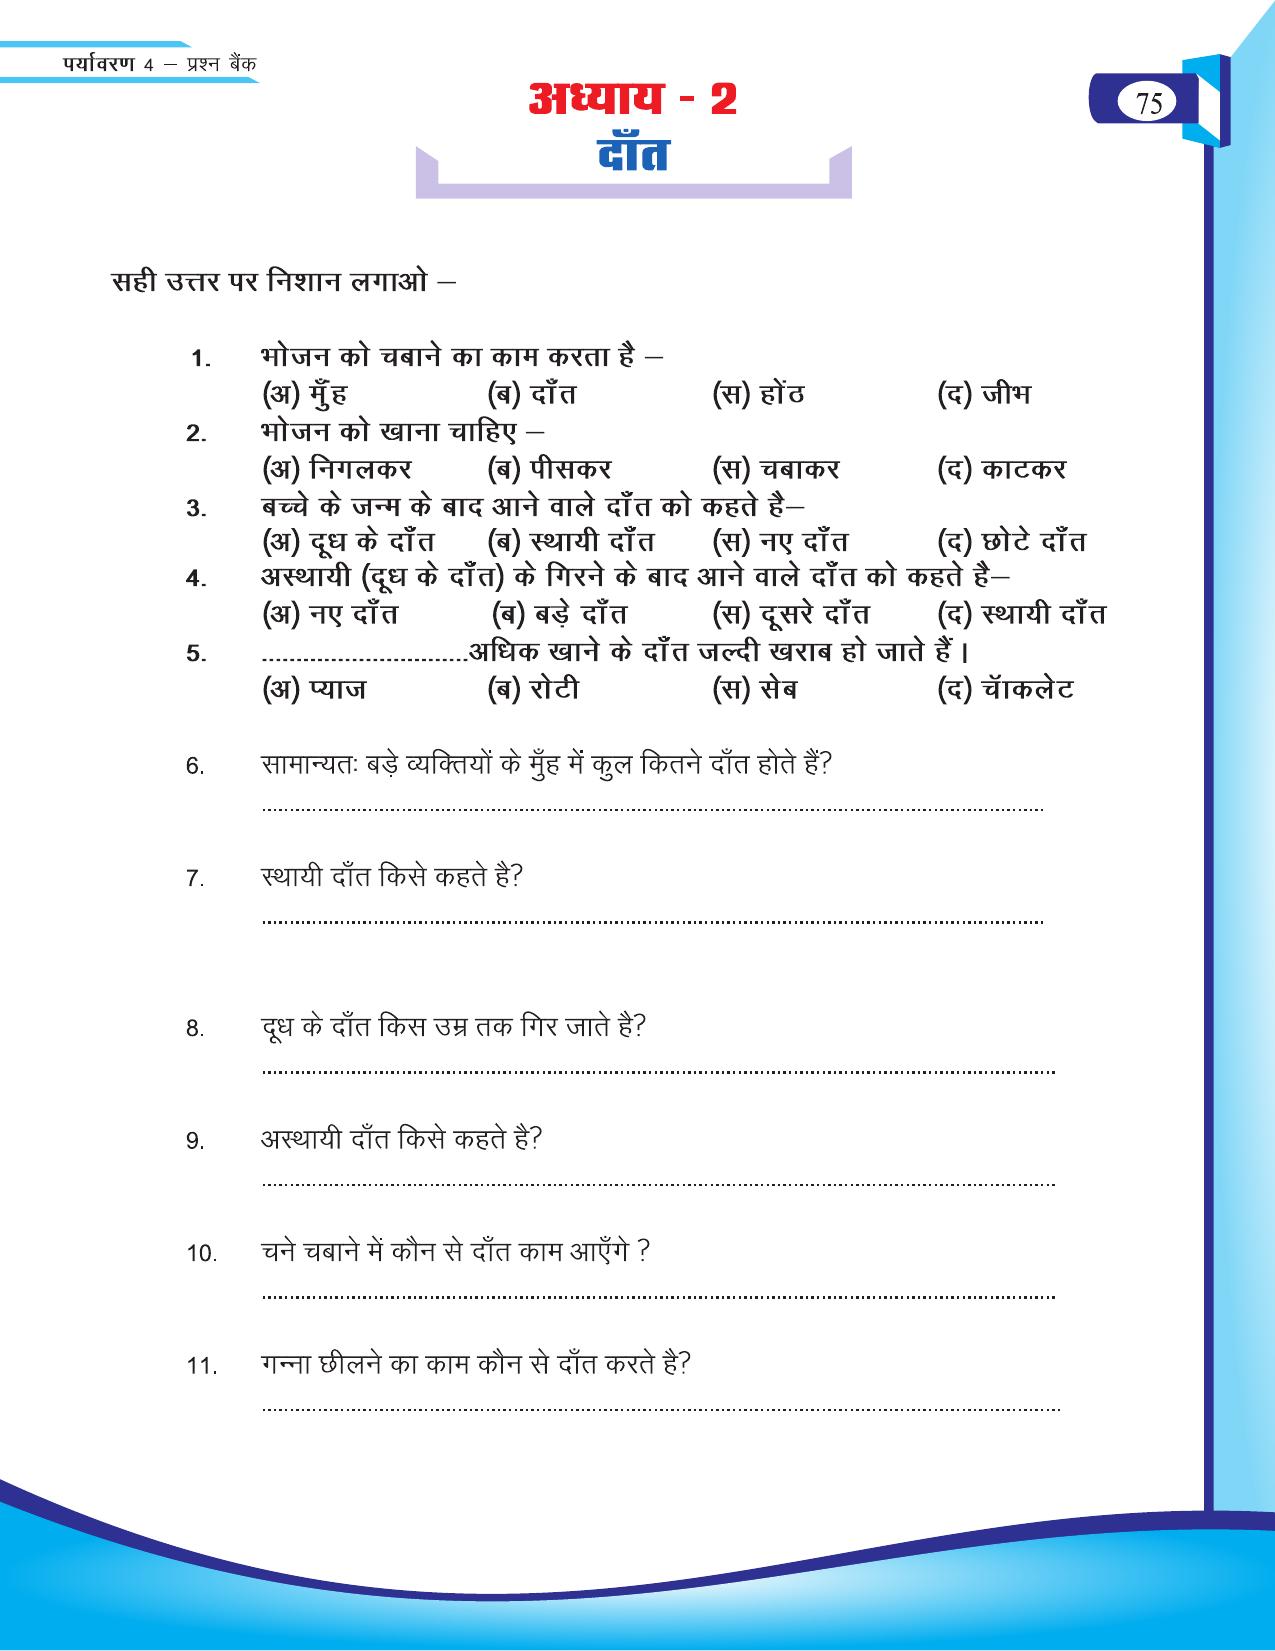 Chhattisgarh Board Class 4 EVS Question Bank 2015-16 - Page 4